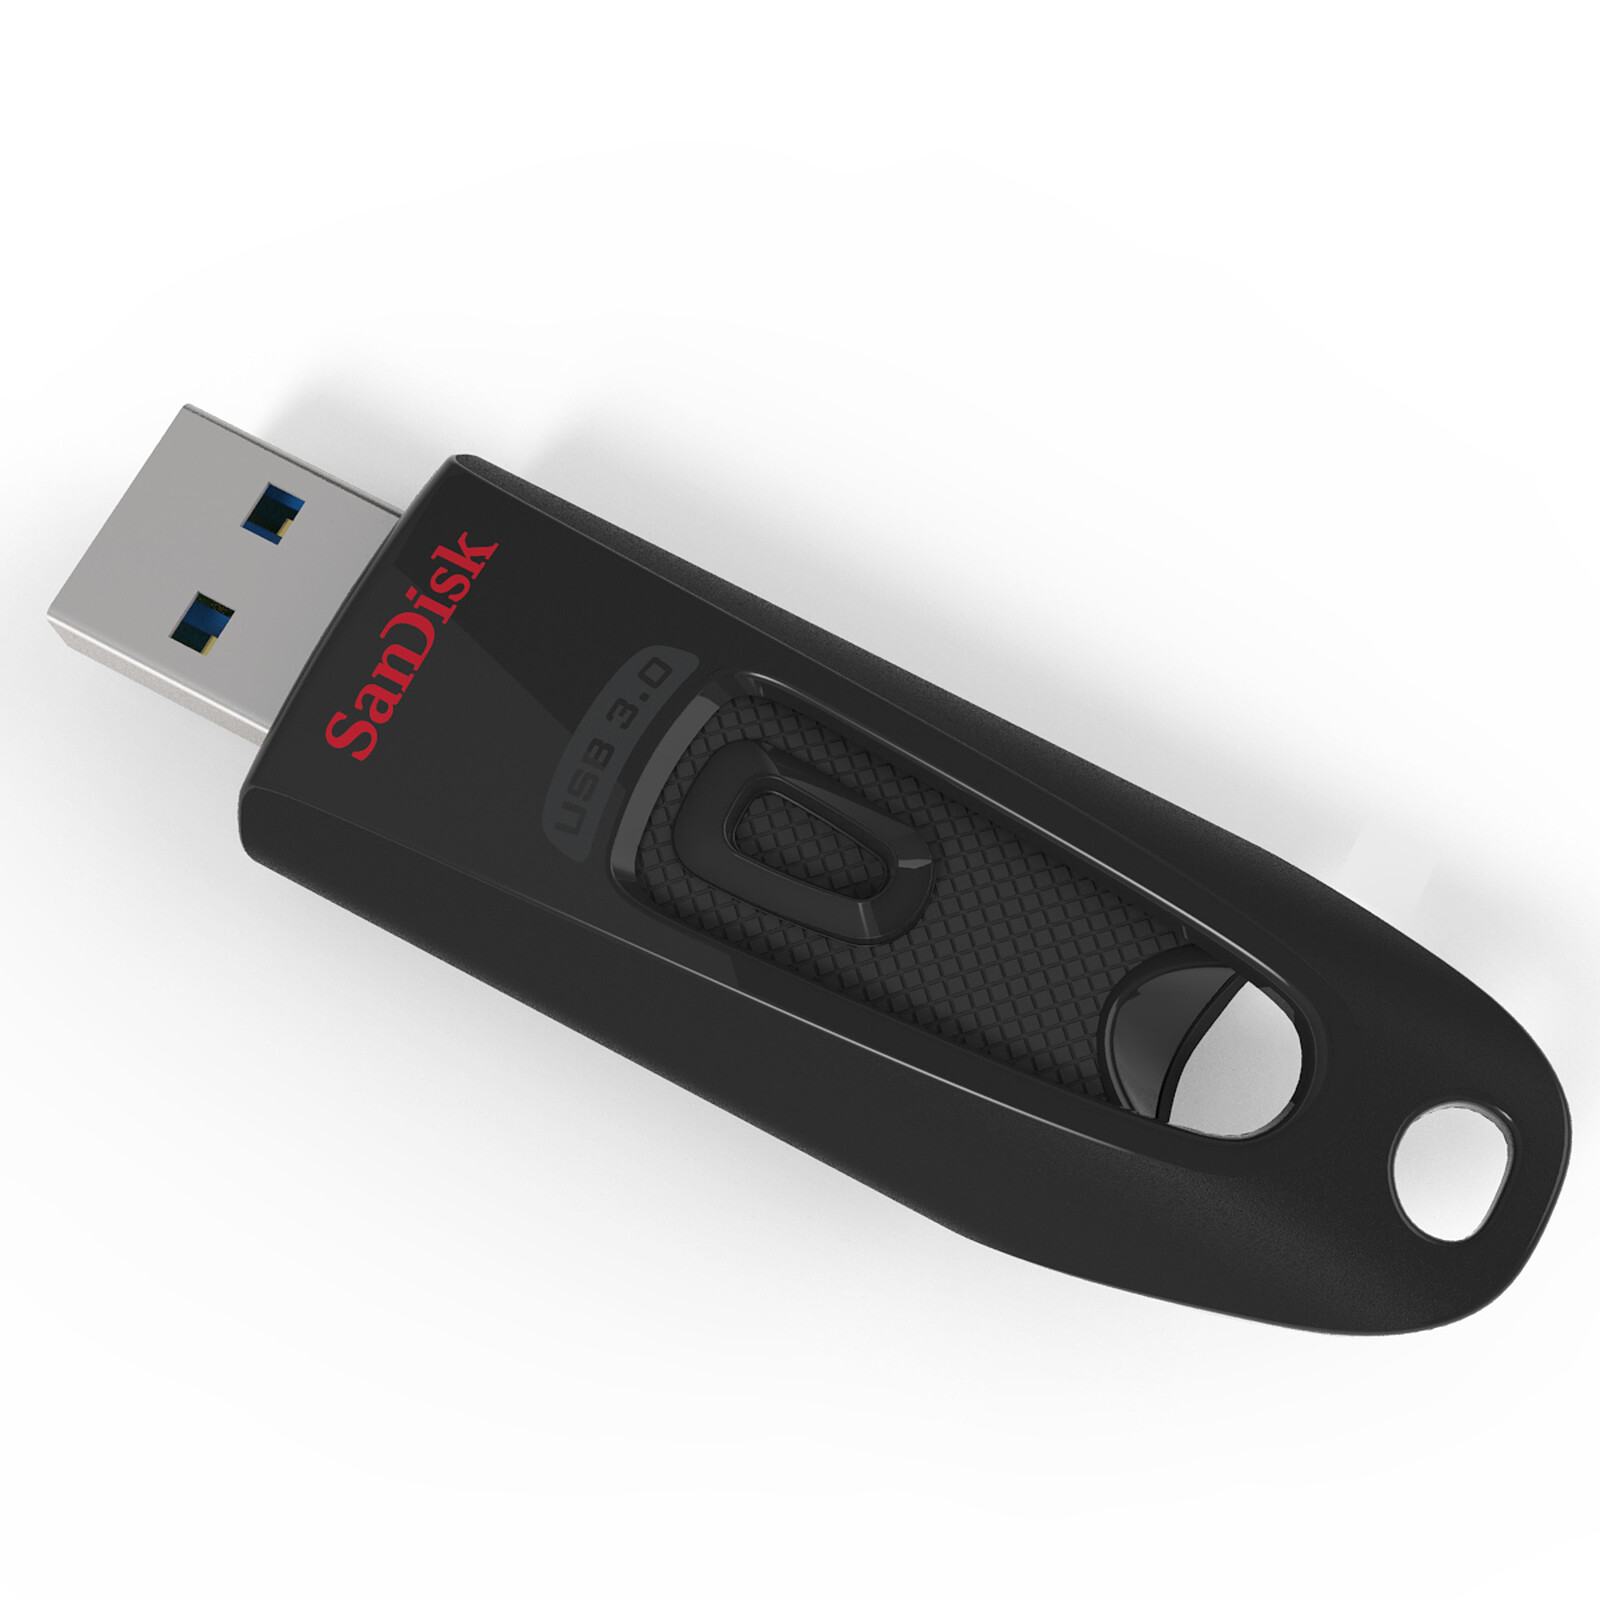 Clé USB-C Kingston DataTraveler 70 256 Go - Stockage rapide et fiable